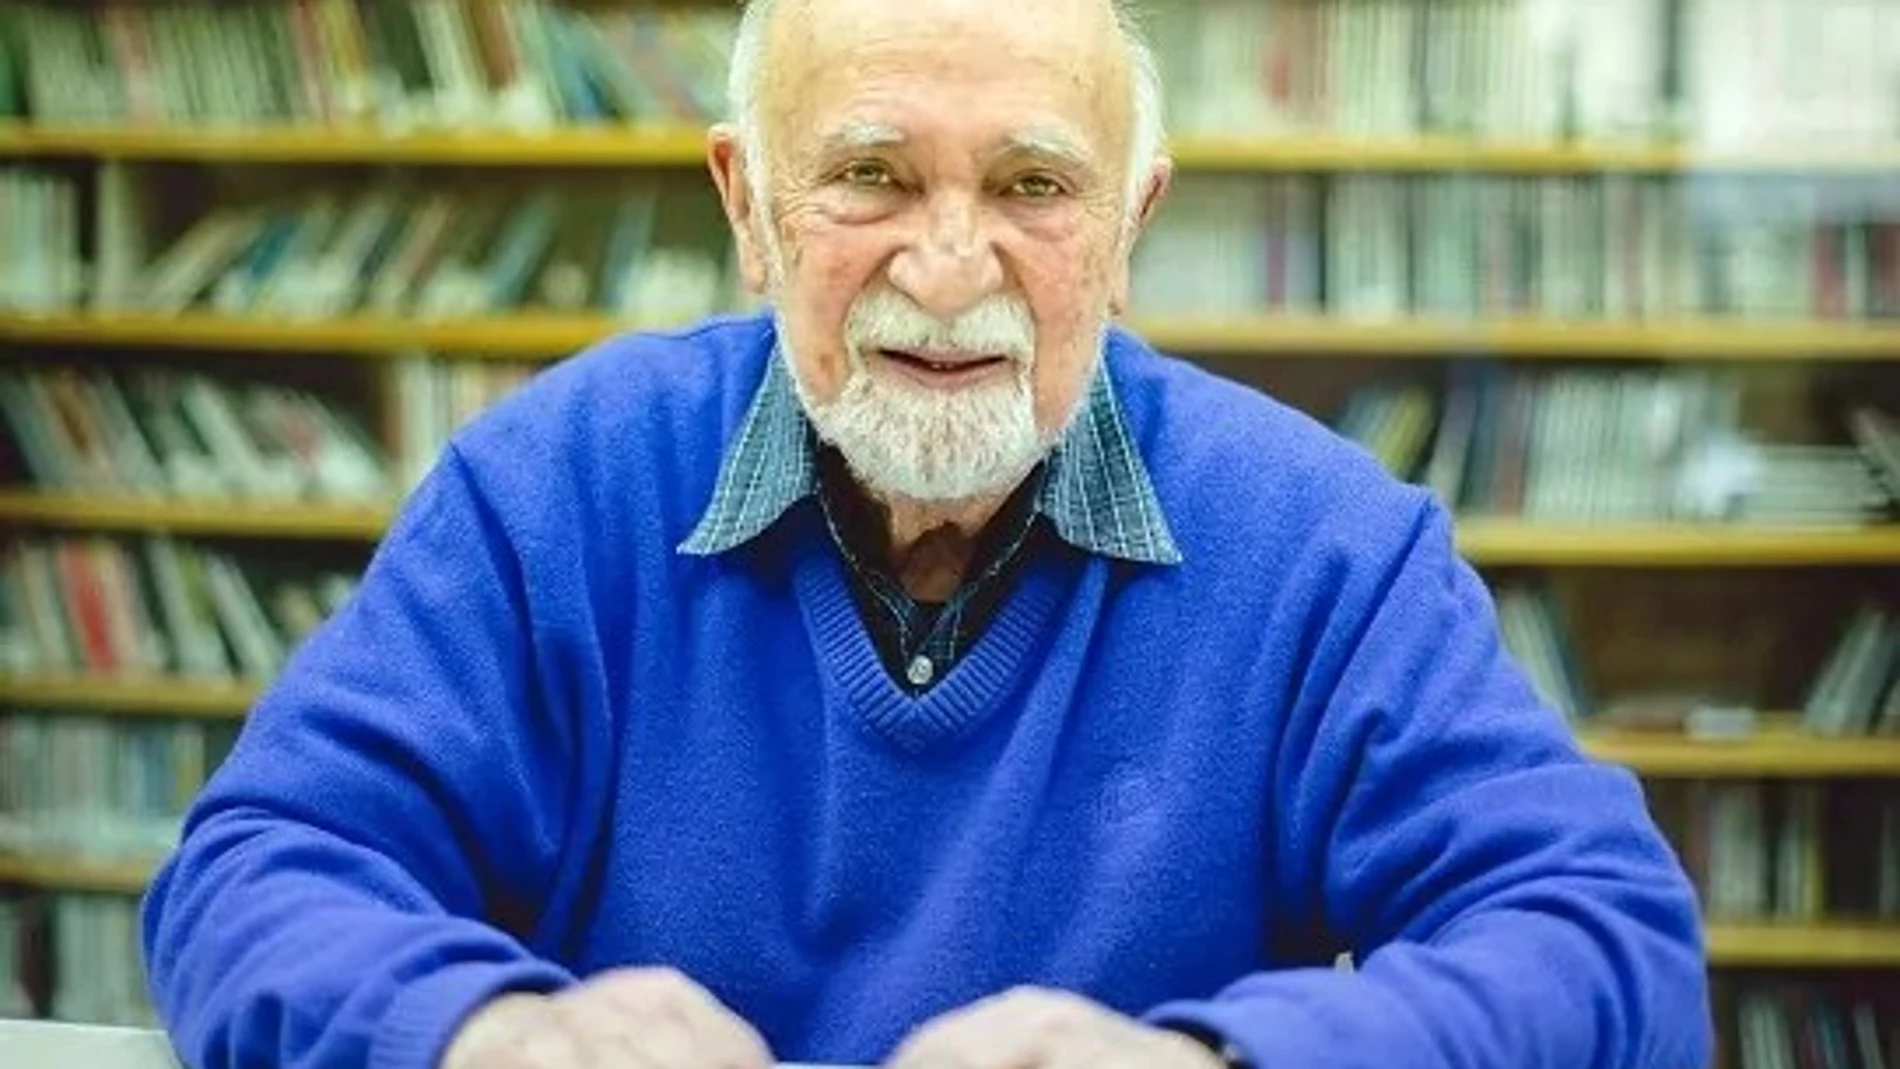 Simon Gronowski se salvó de acabar en Auschwitz al saltar del tren que le conducía al campo de concentración